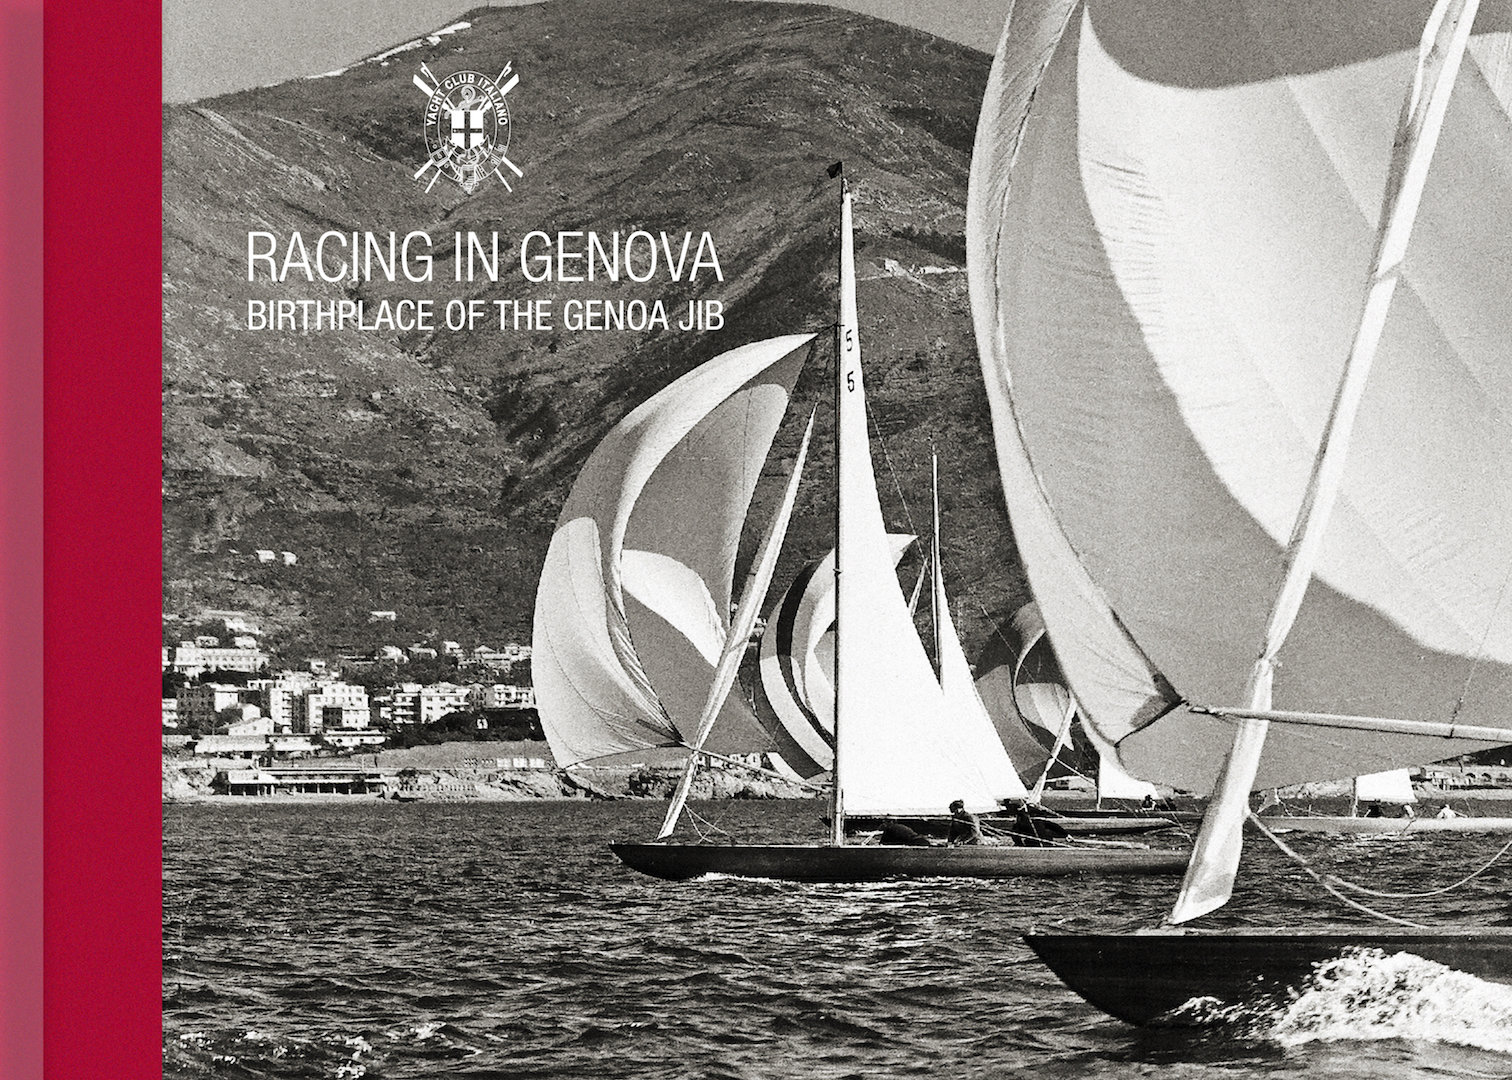 Un volume dello YC Italiano per festeggiare il ritorno della grande vela olimpica a Genova